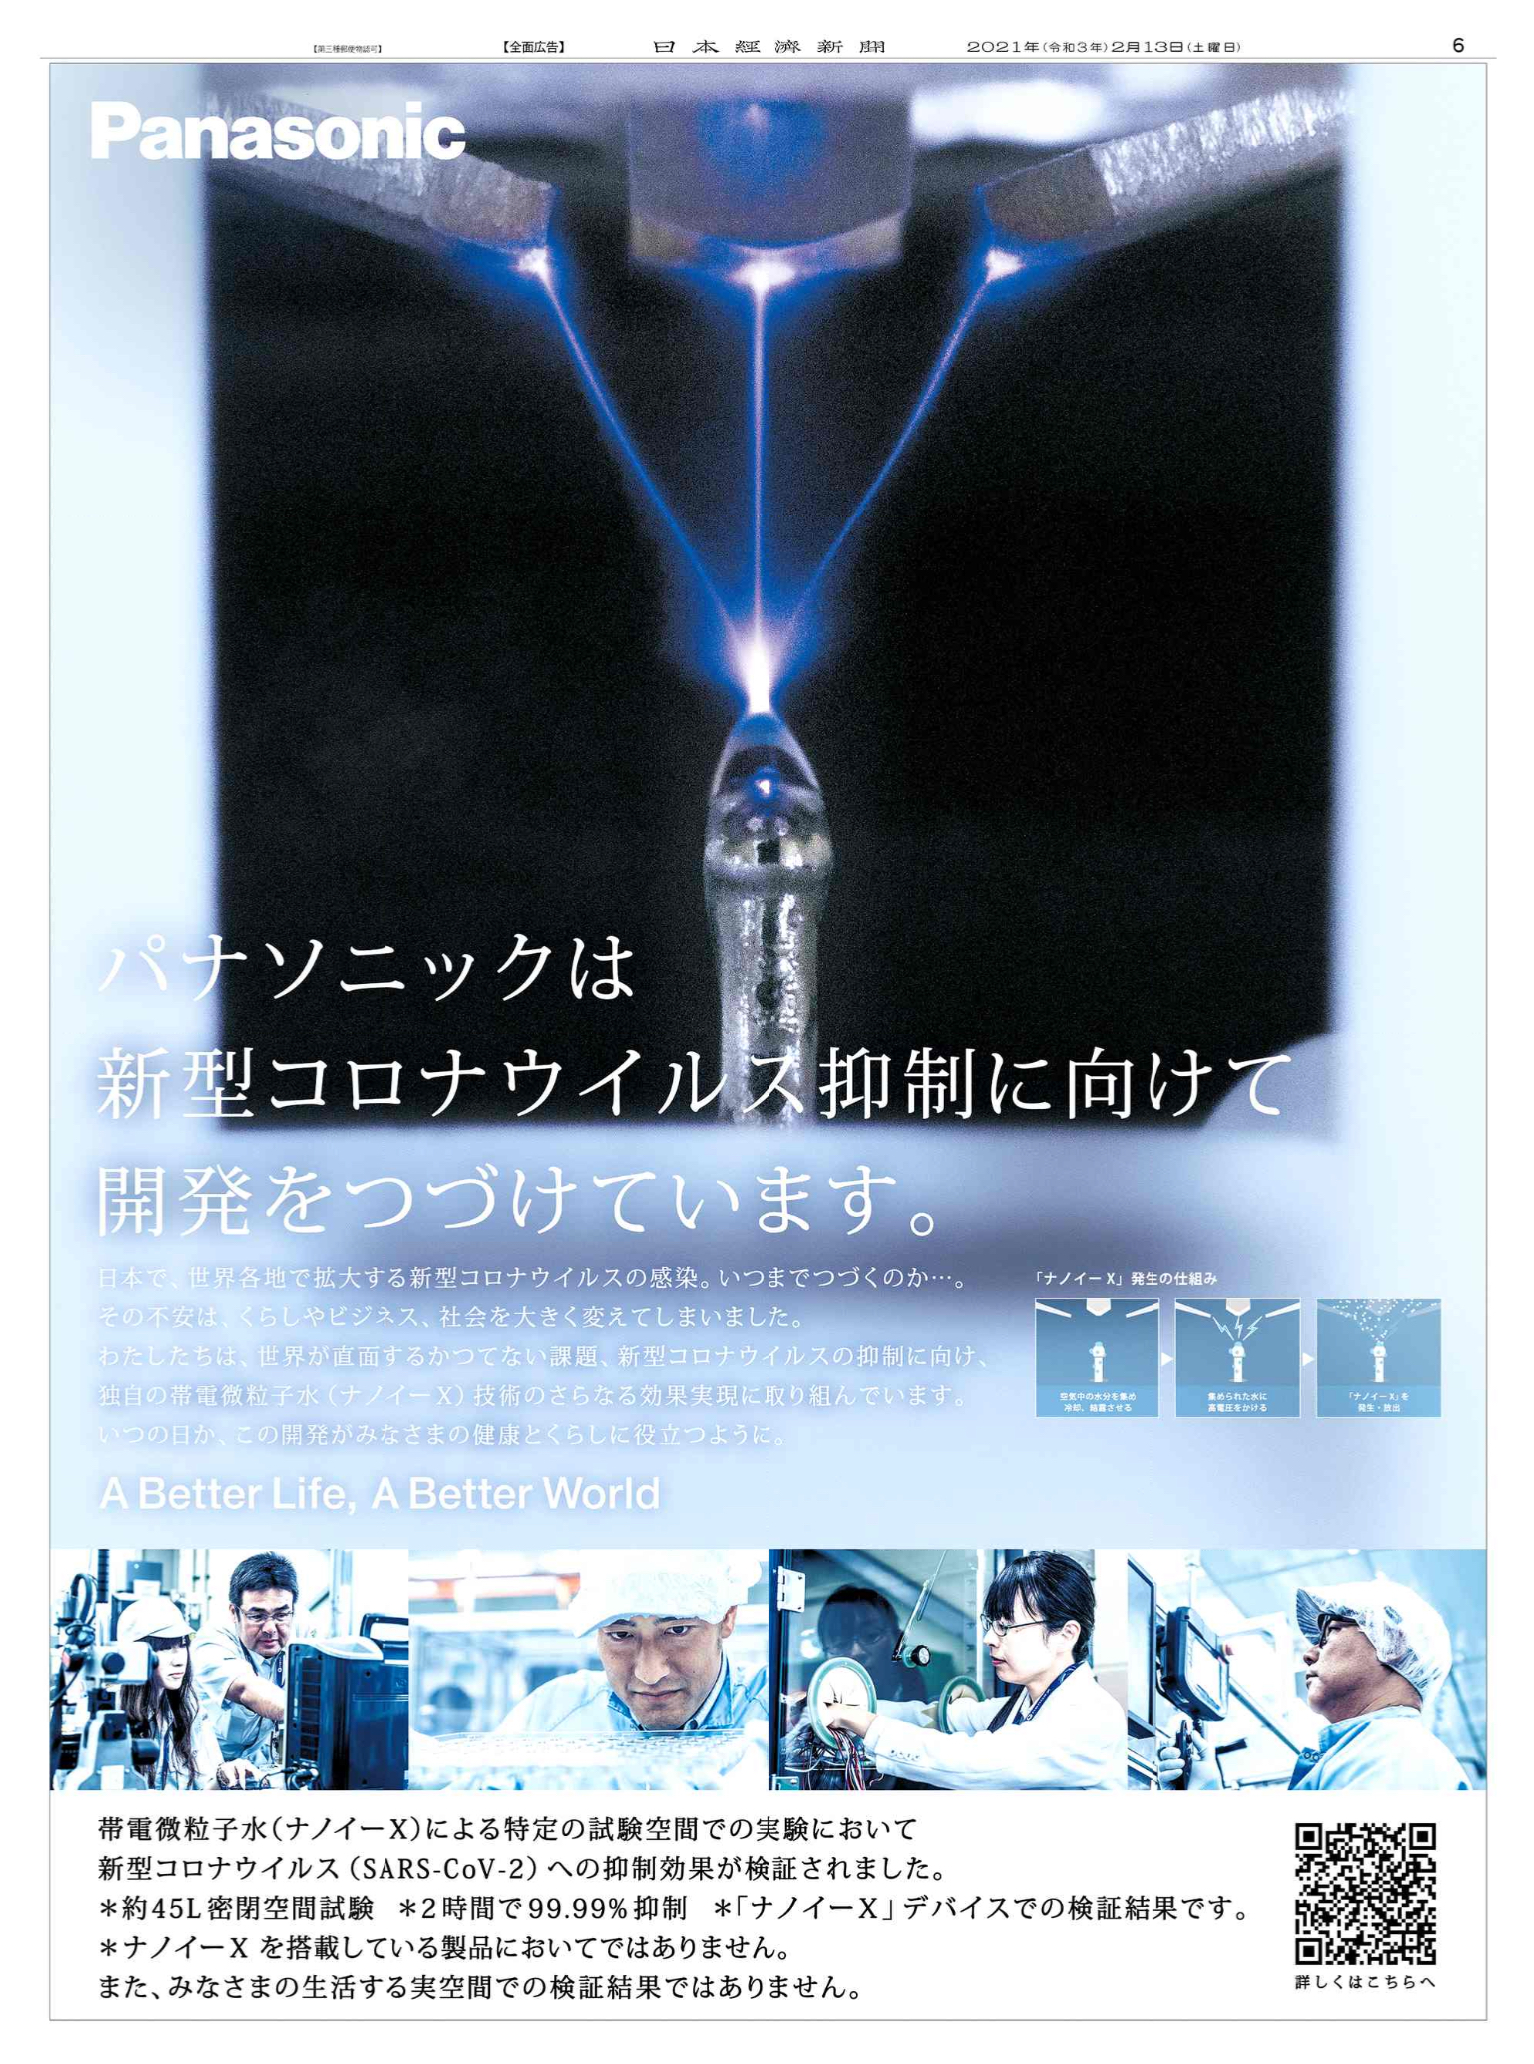 Nikkei Brand Voice 日本経済新聞の広告紹介アカウント 2 13 パナソニック の広告です 新型コロナウイルスの抑制に向けて開発を進めている独自の帯電微粒子水 ナノイーx 全人類が向き合う難敵にテクノロジーの粋を結集して挑んでいます 抑制効果